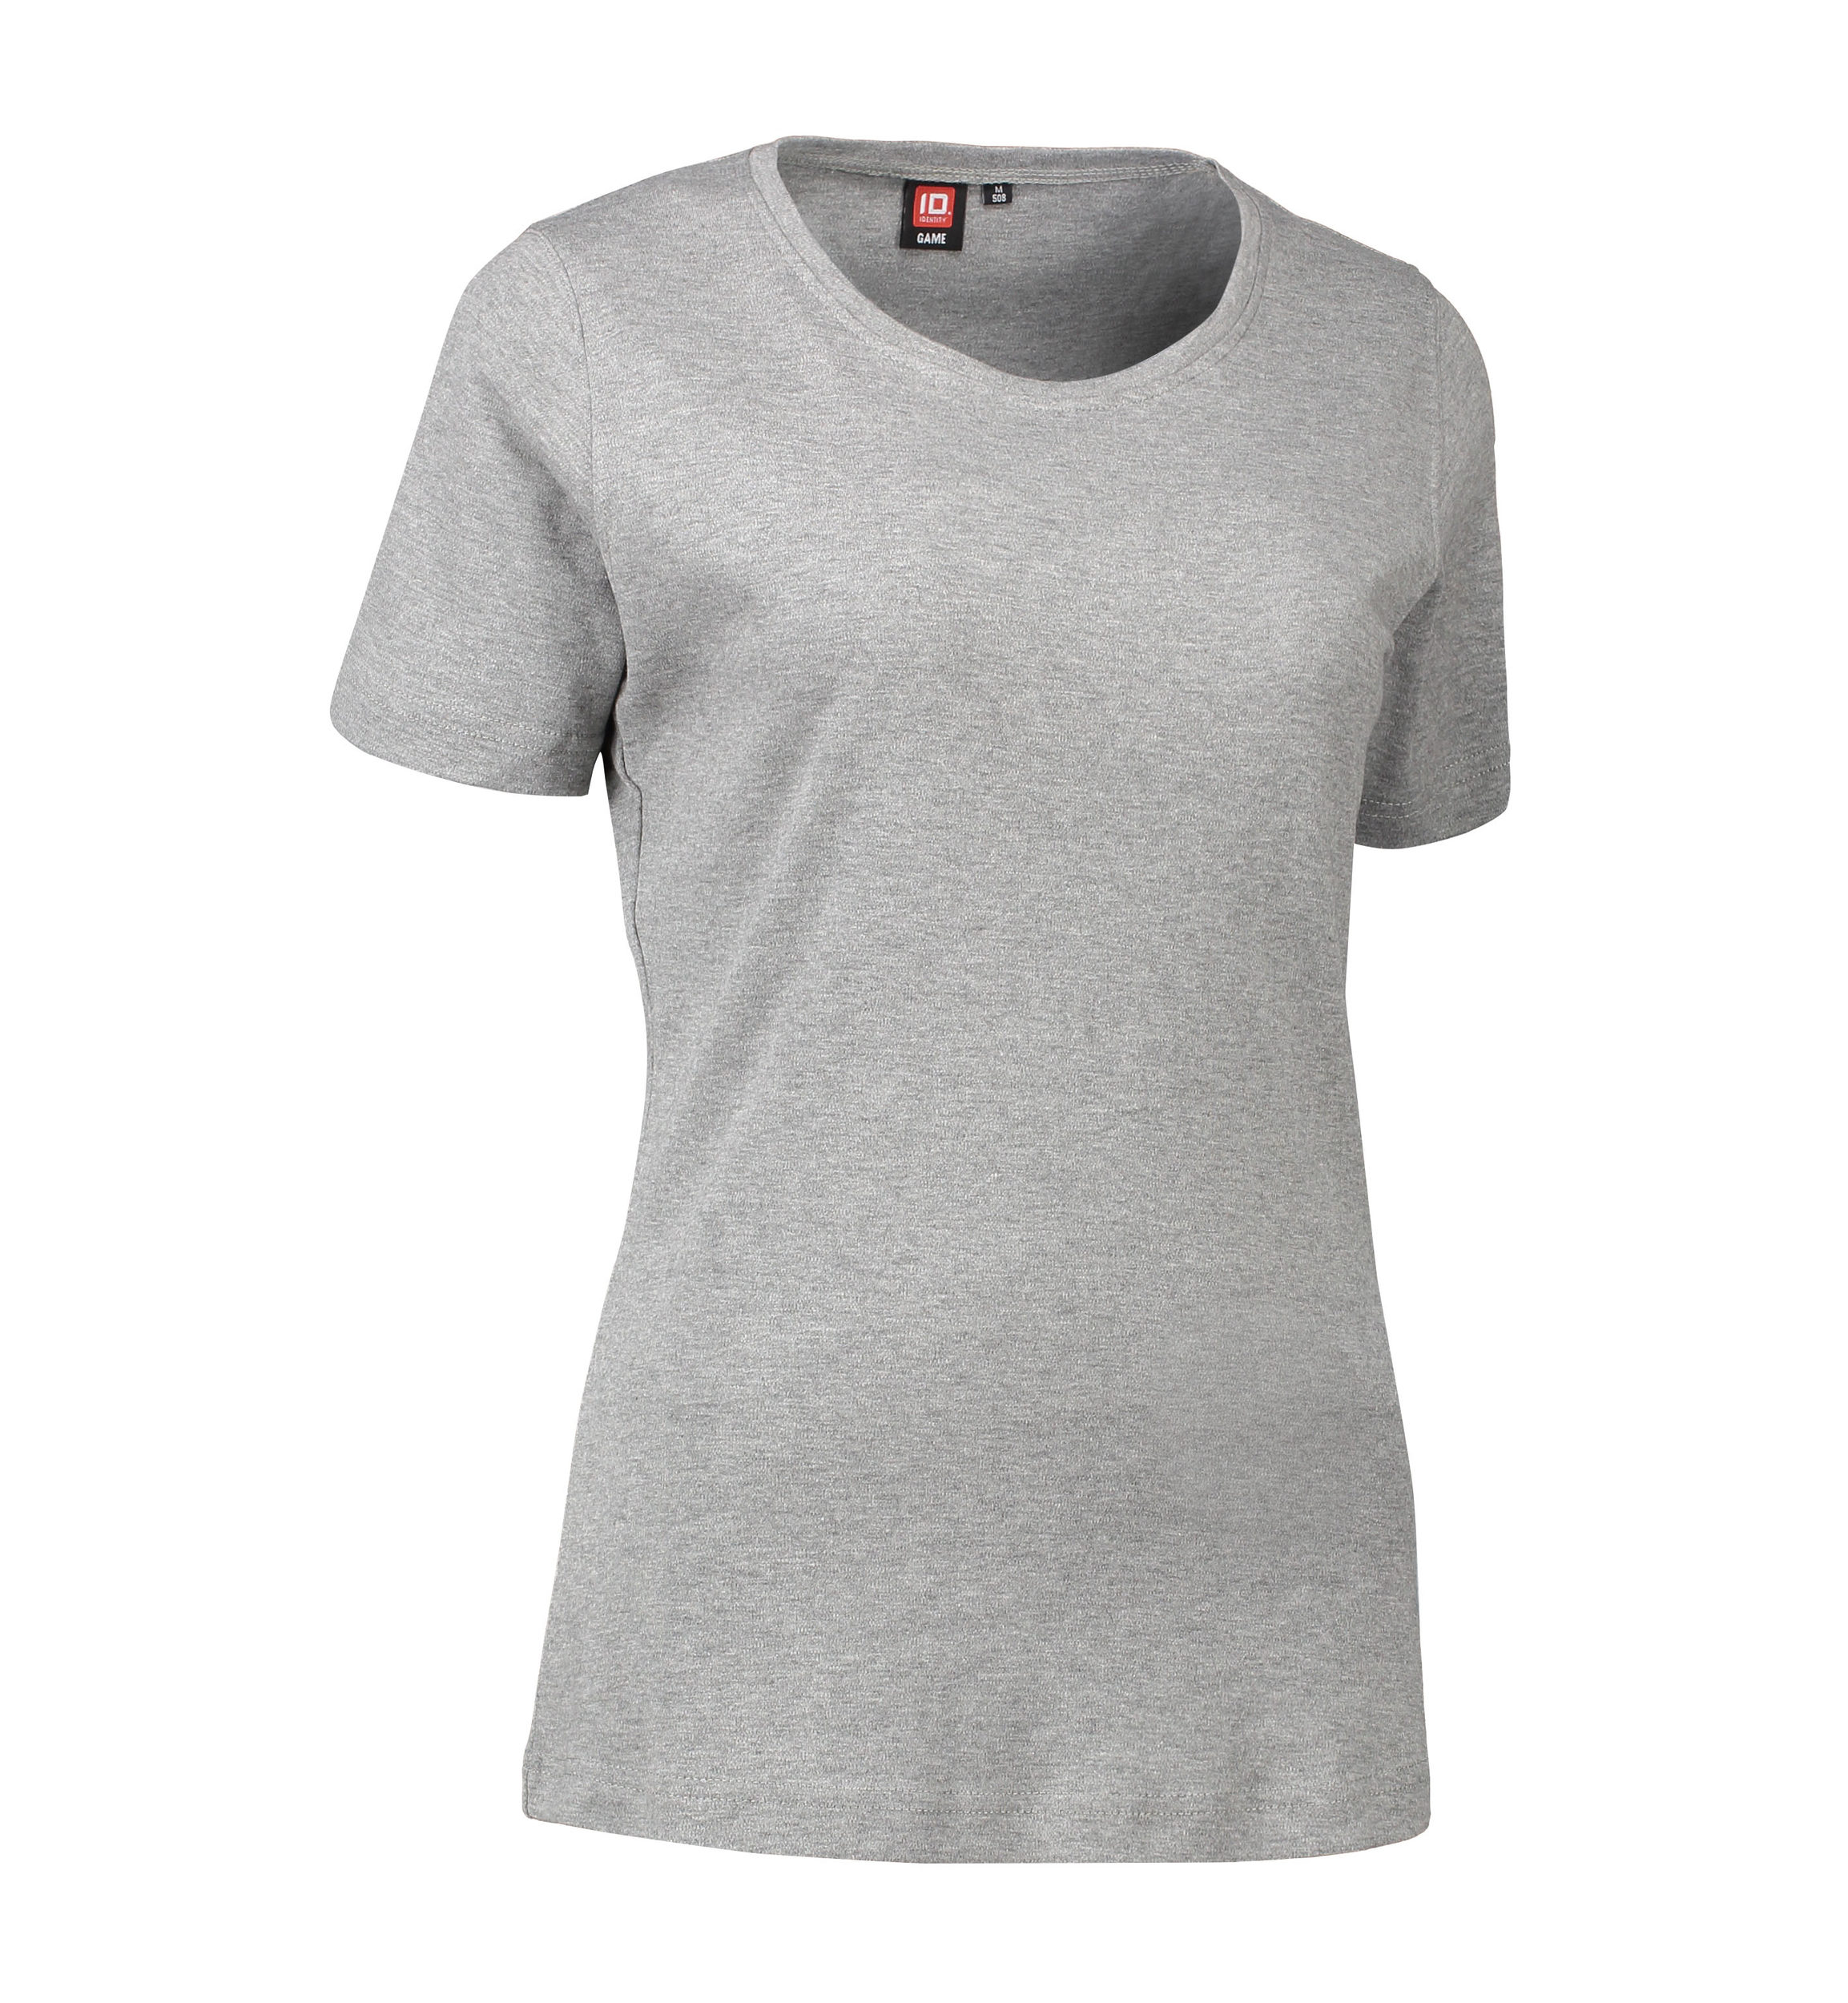 Billede af Dame t-shirt med rund hals i grå - S hos Sygeplejebutikken.dk